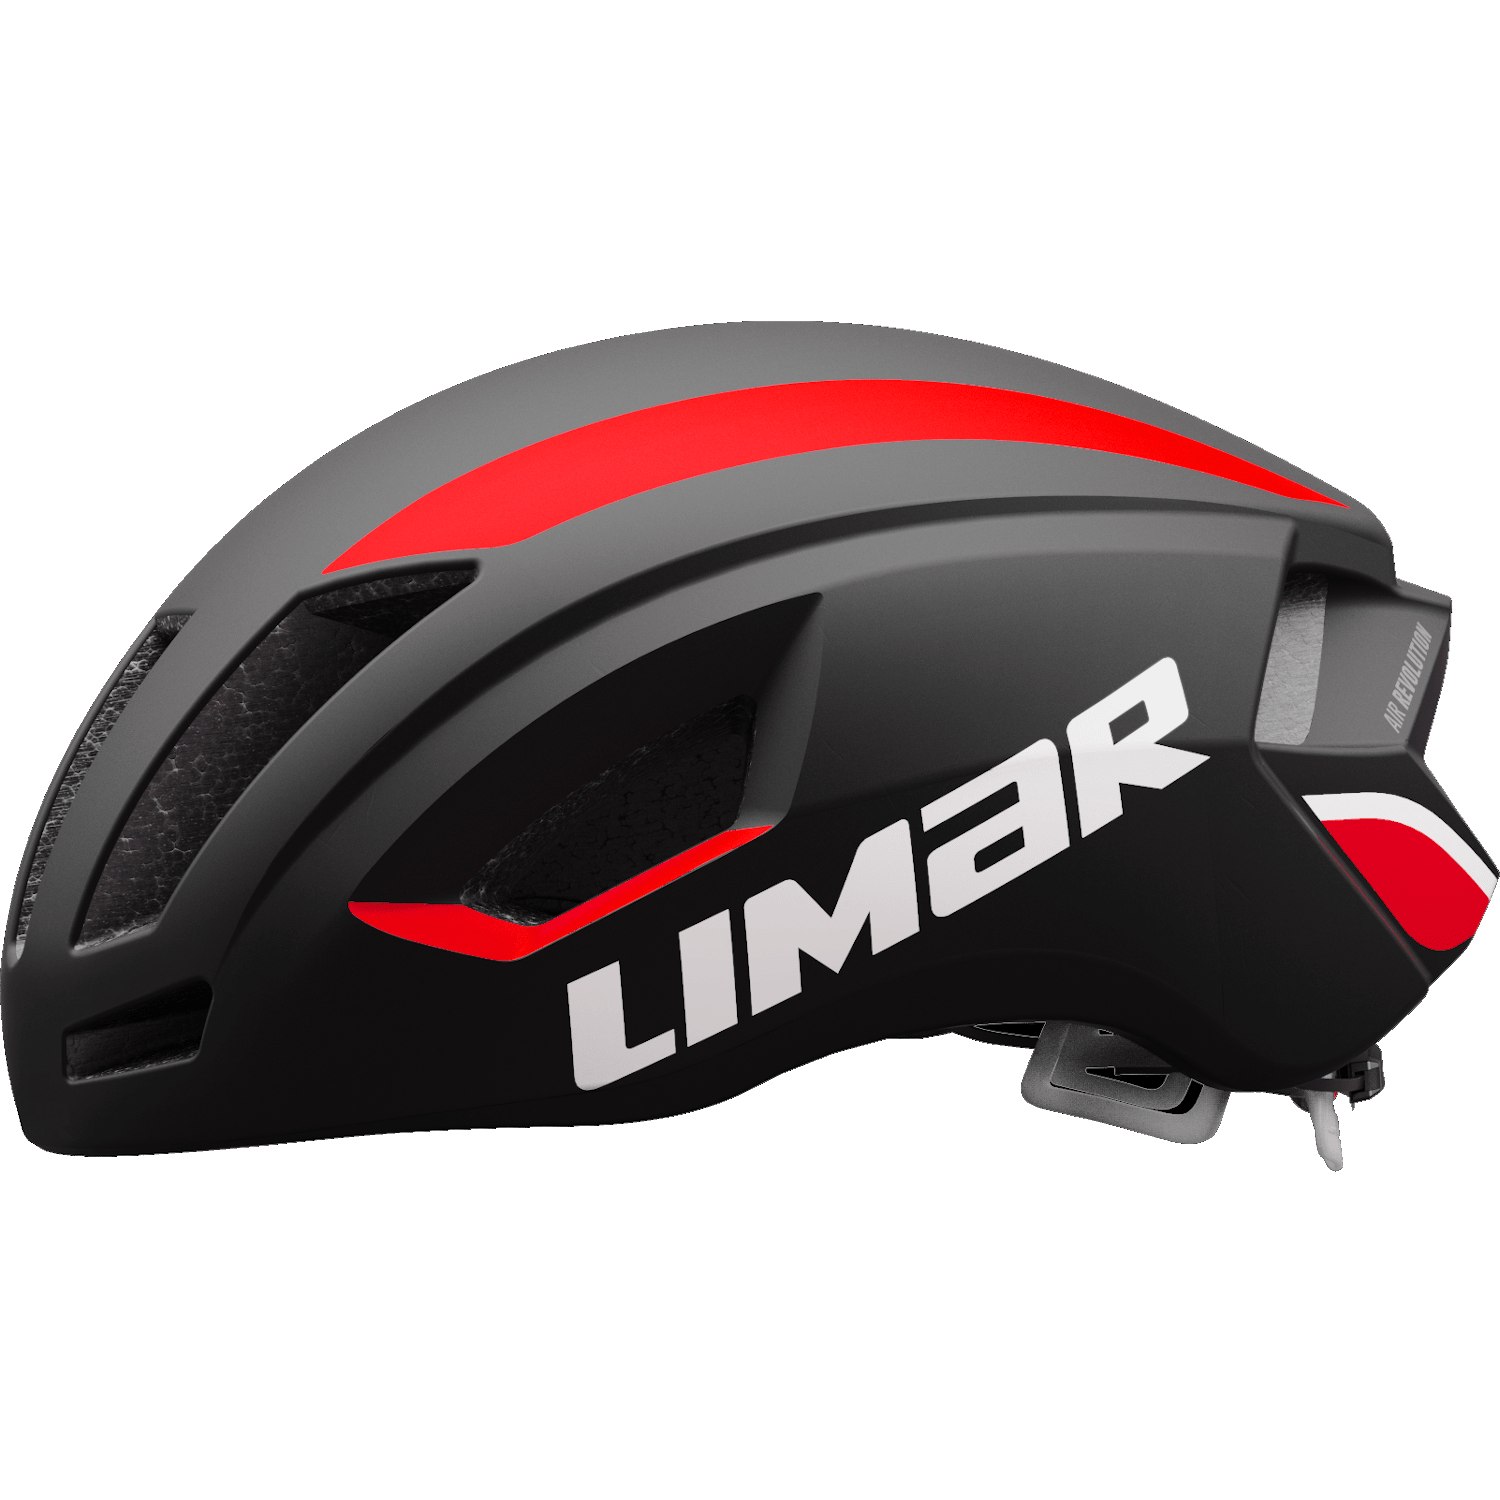 Productfoto van Limar Air Speed Helm - Matt Black Red 2022